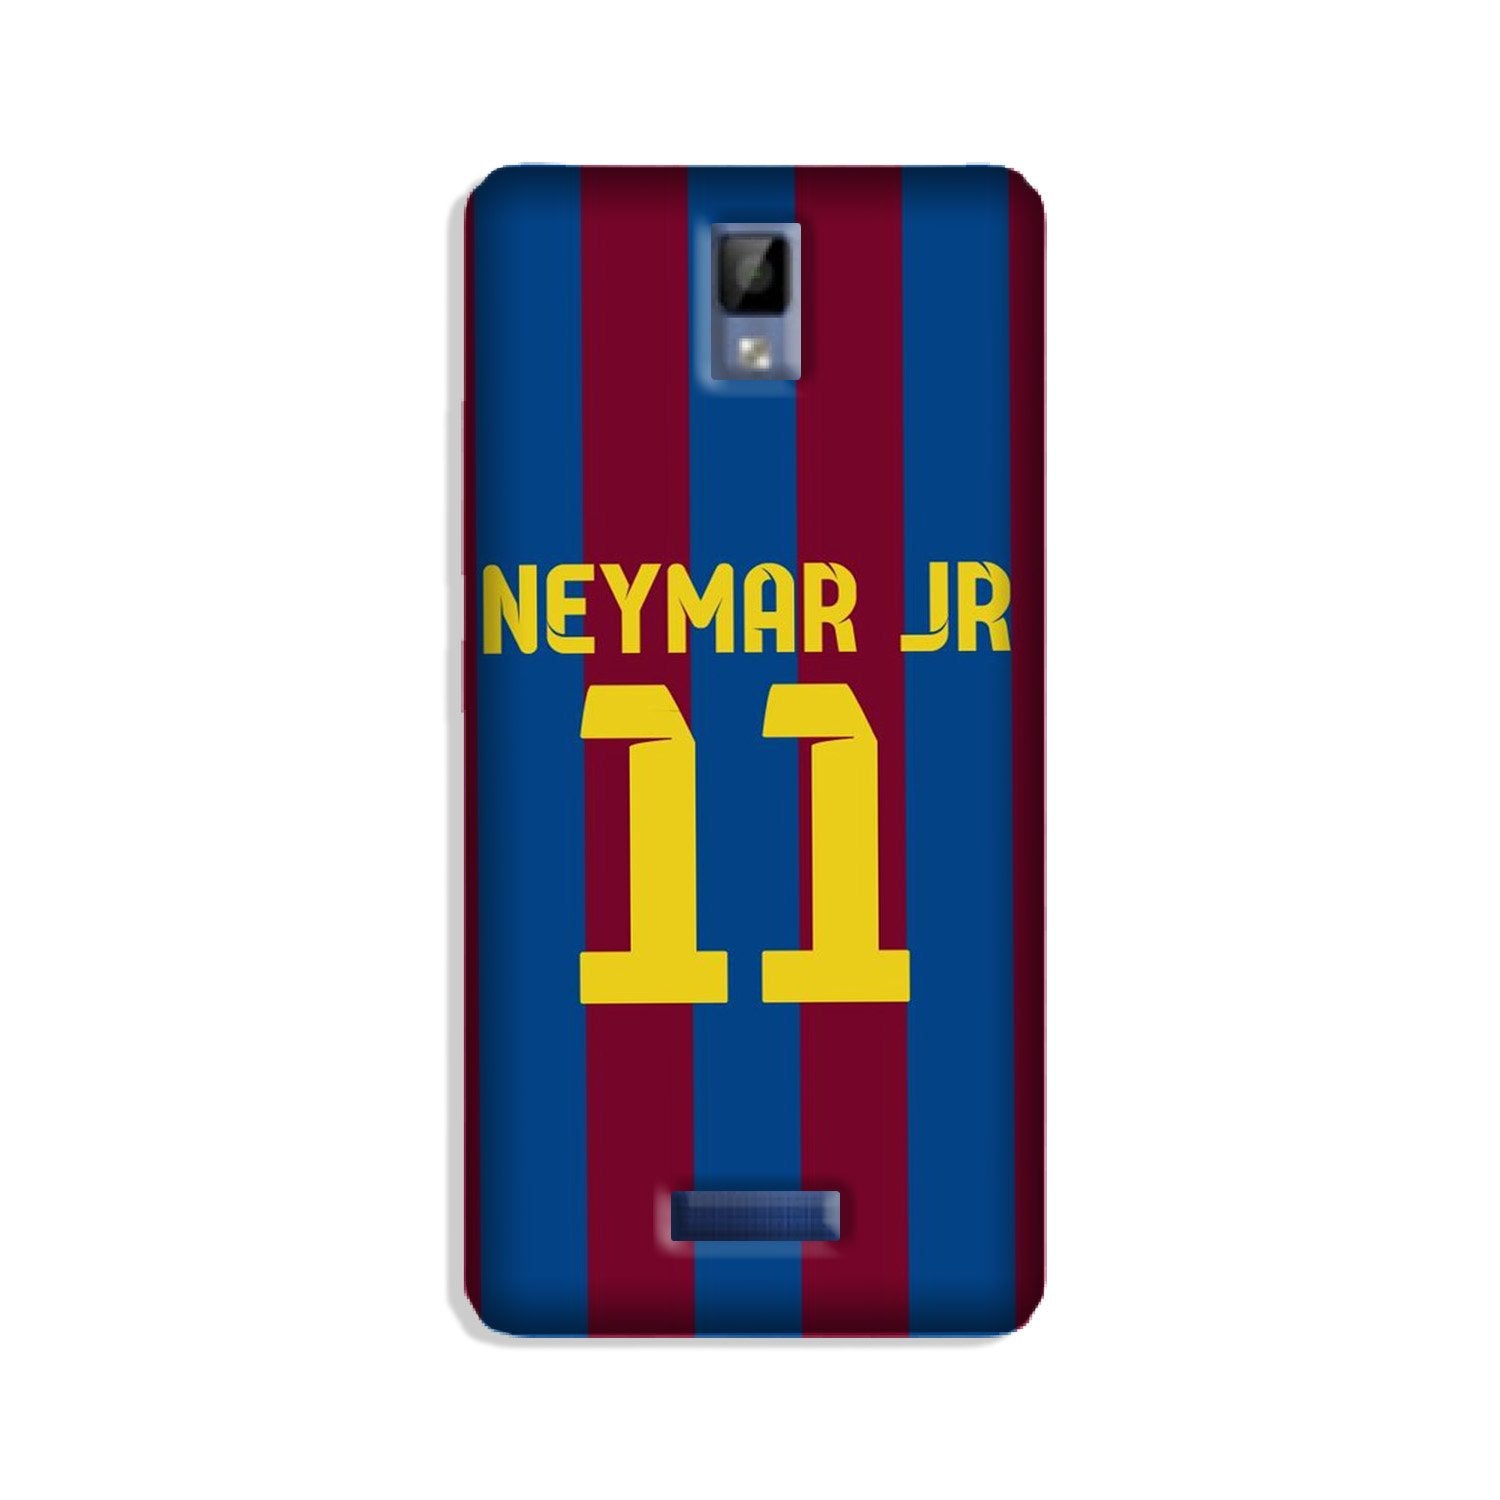 Neymar Jr Case for Gionee P7  (Design - 162)